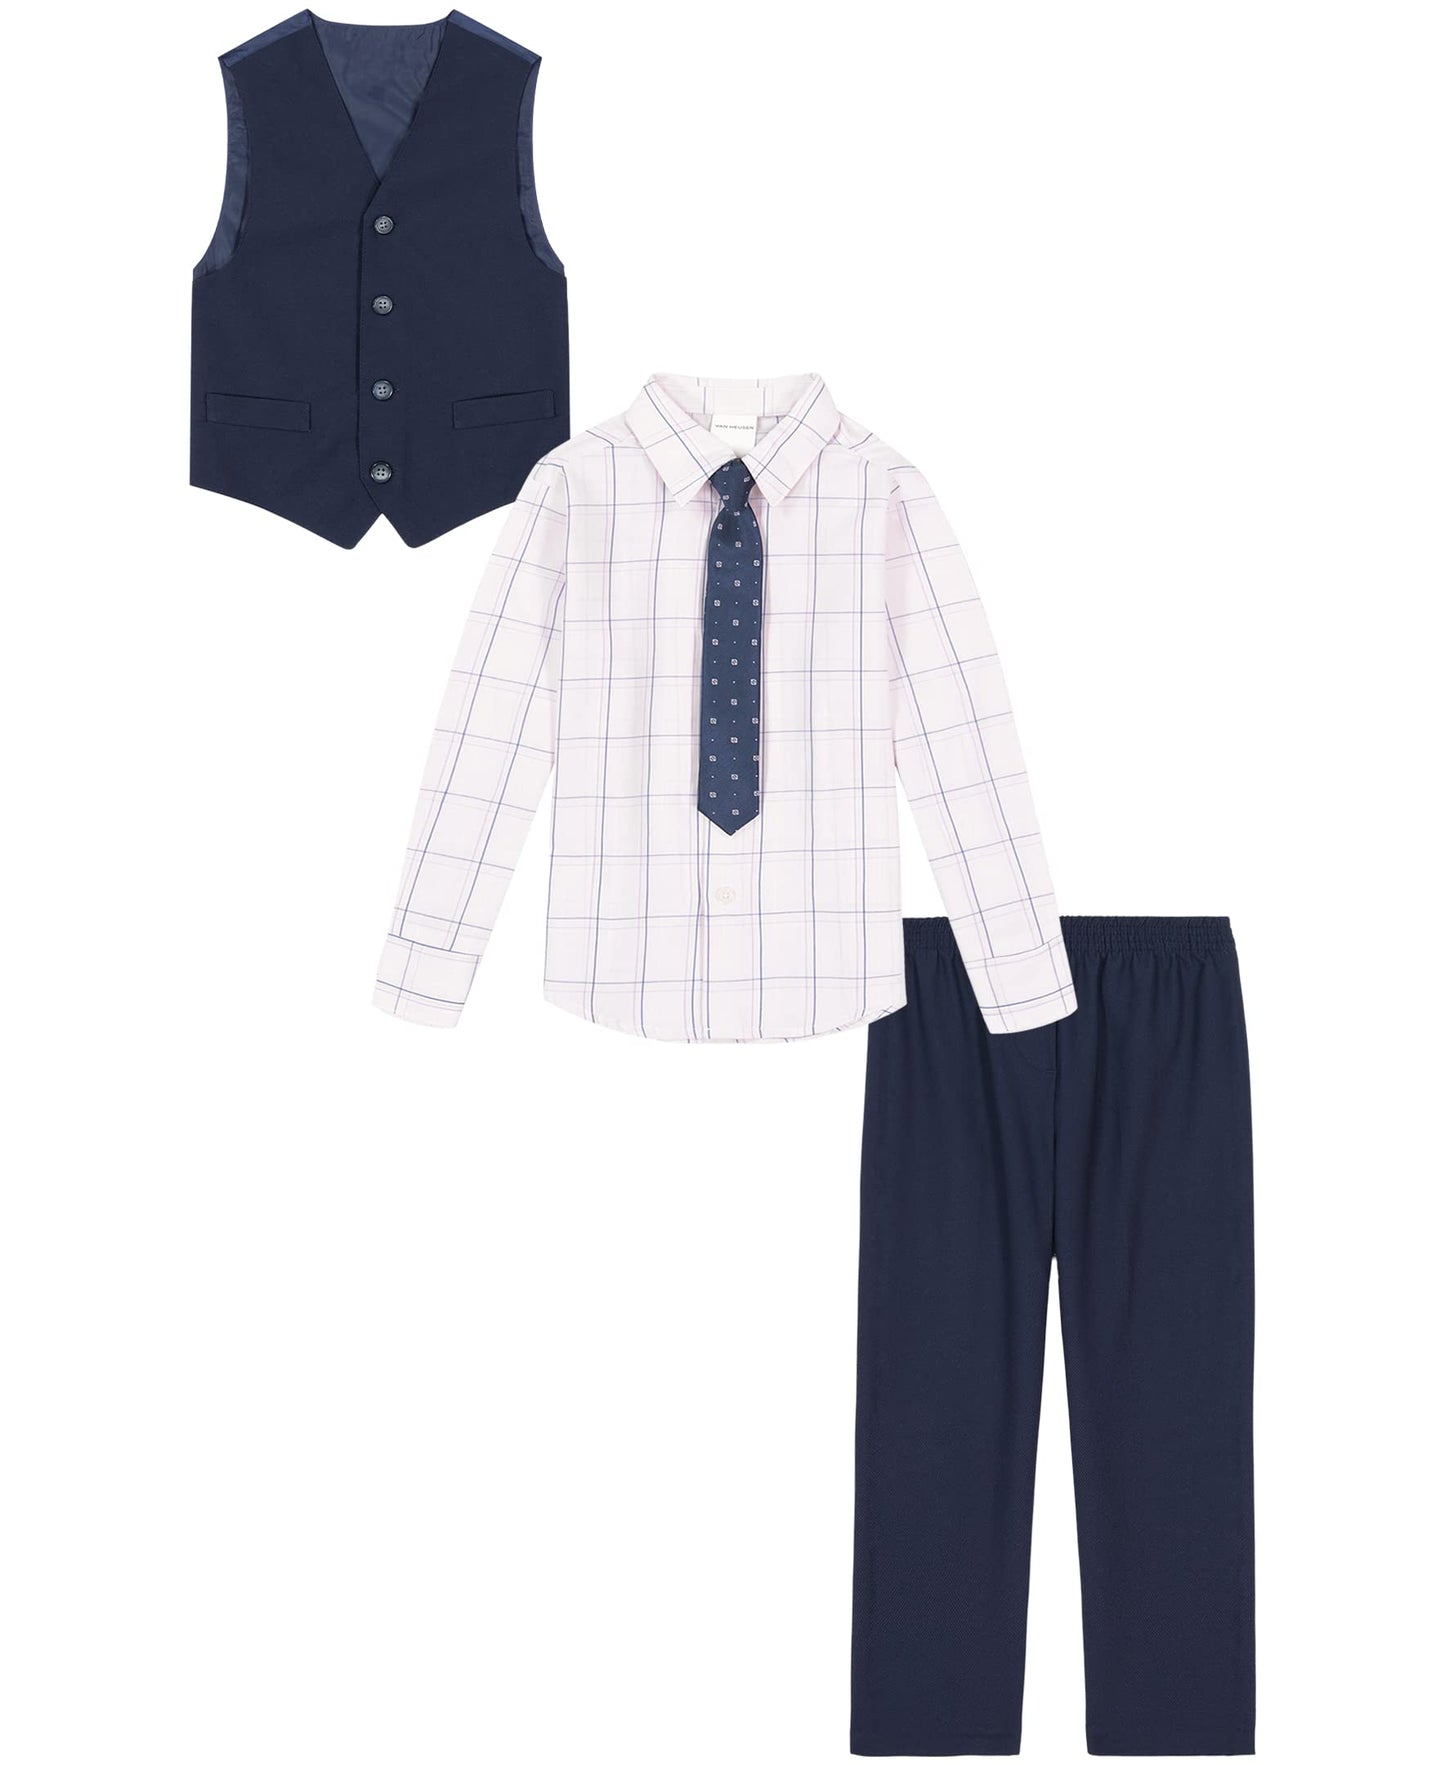 Van Heusen Boys' 4-Piece Formal Suit Set, Vest, Pants, Collared Dress Shirt, and Tie, Lavender Fog Tech